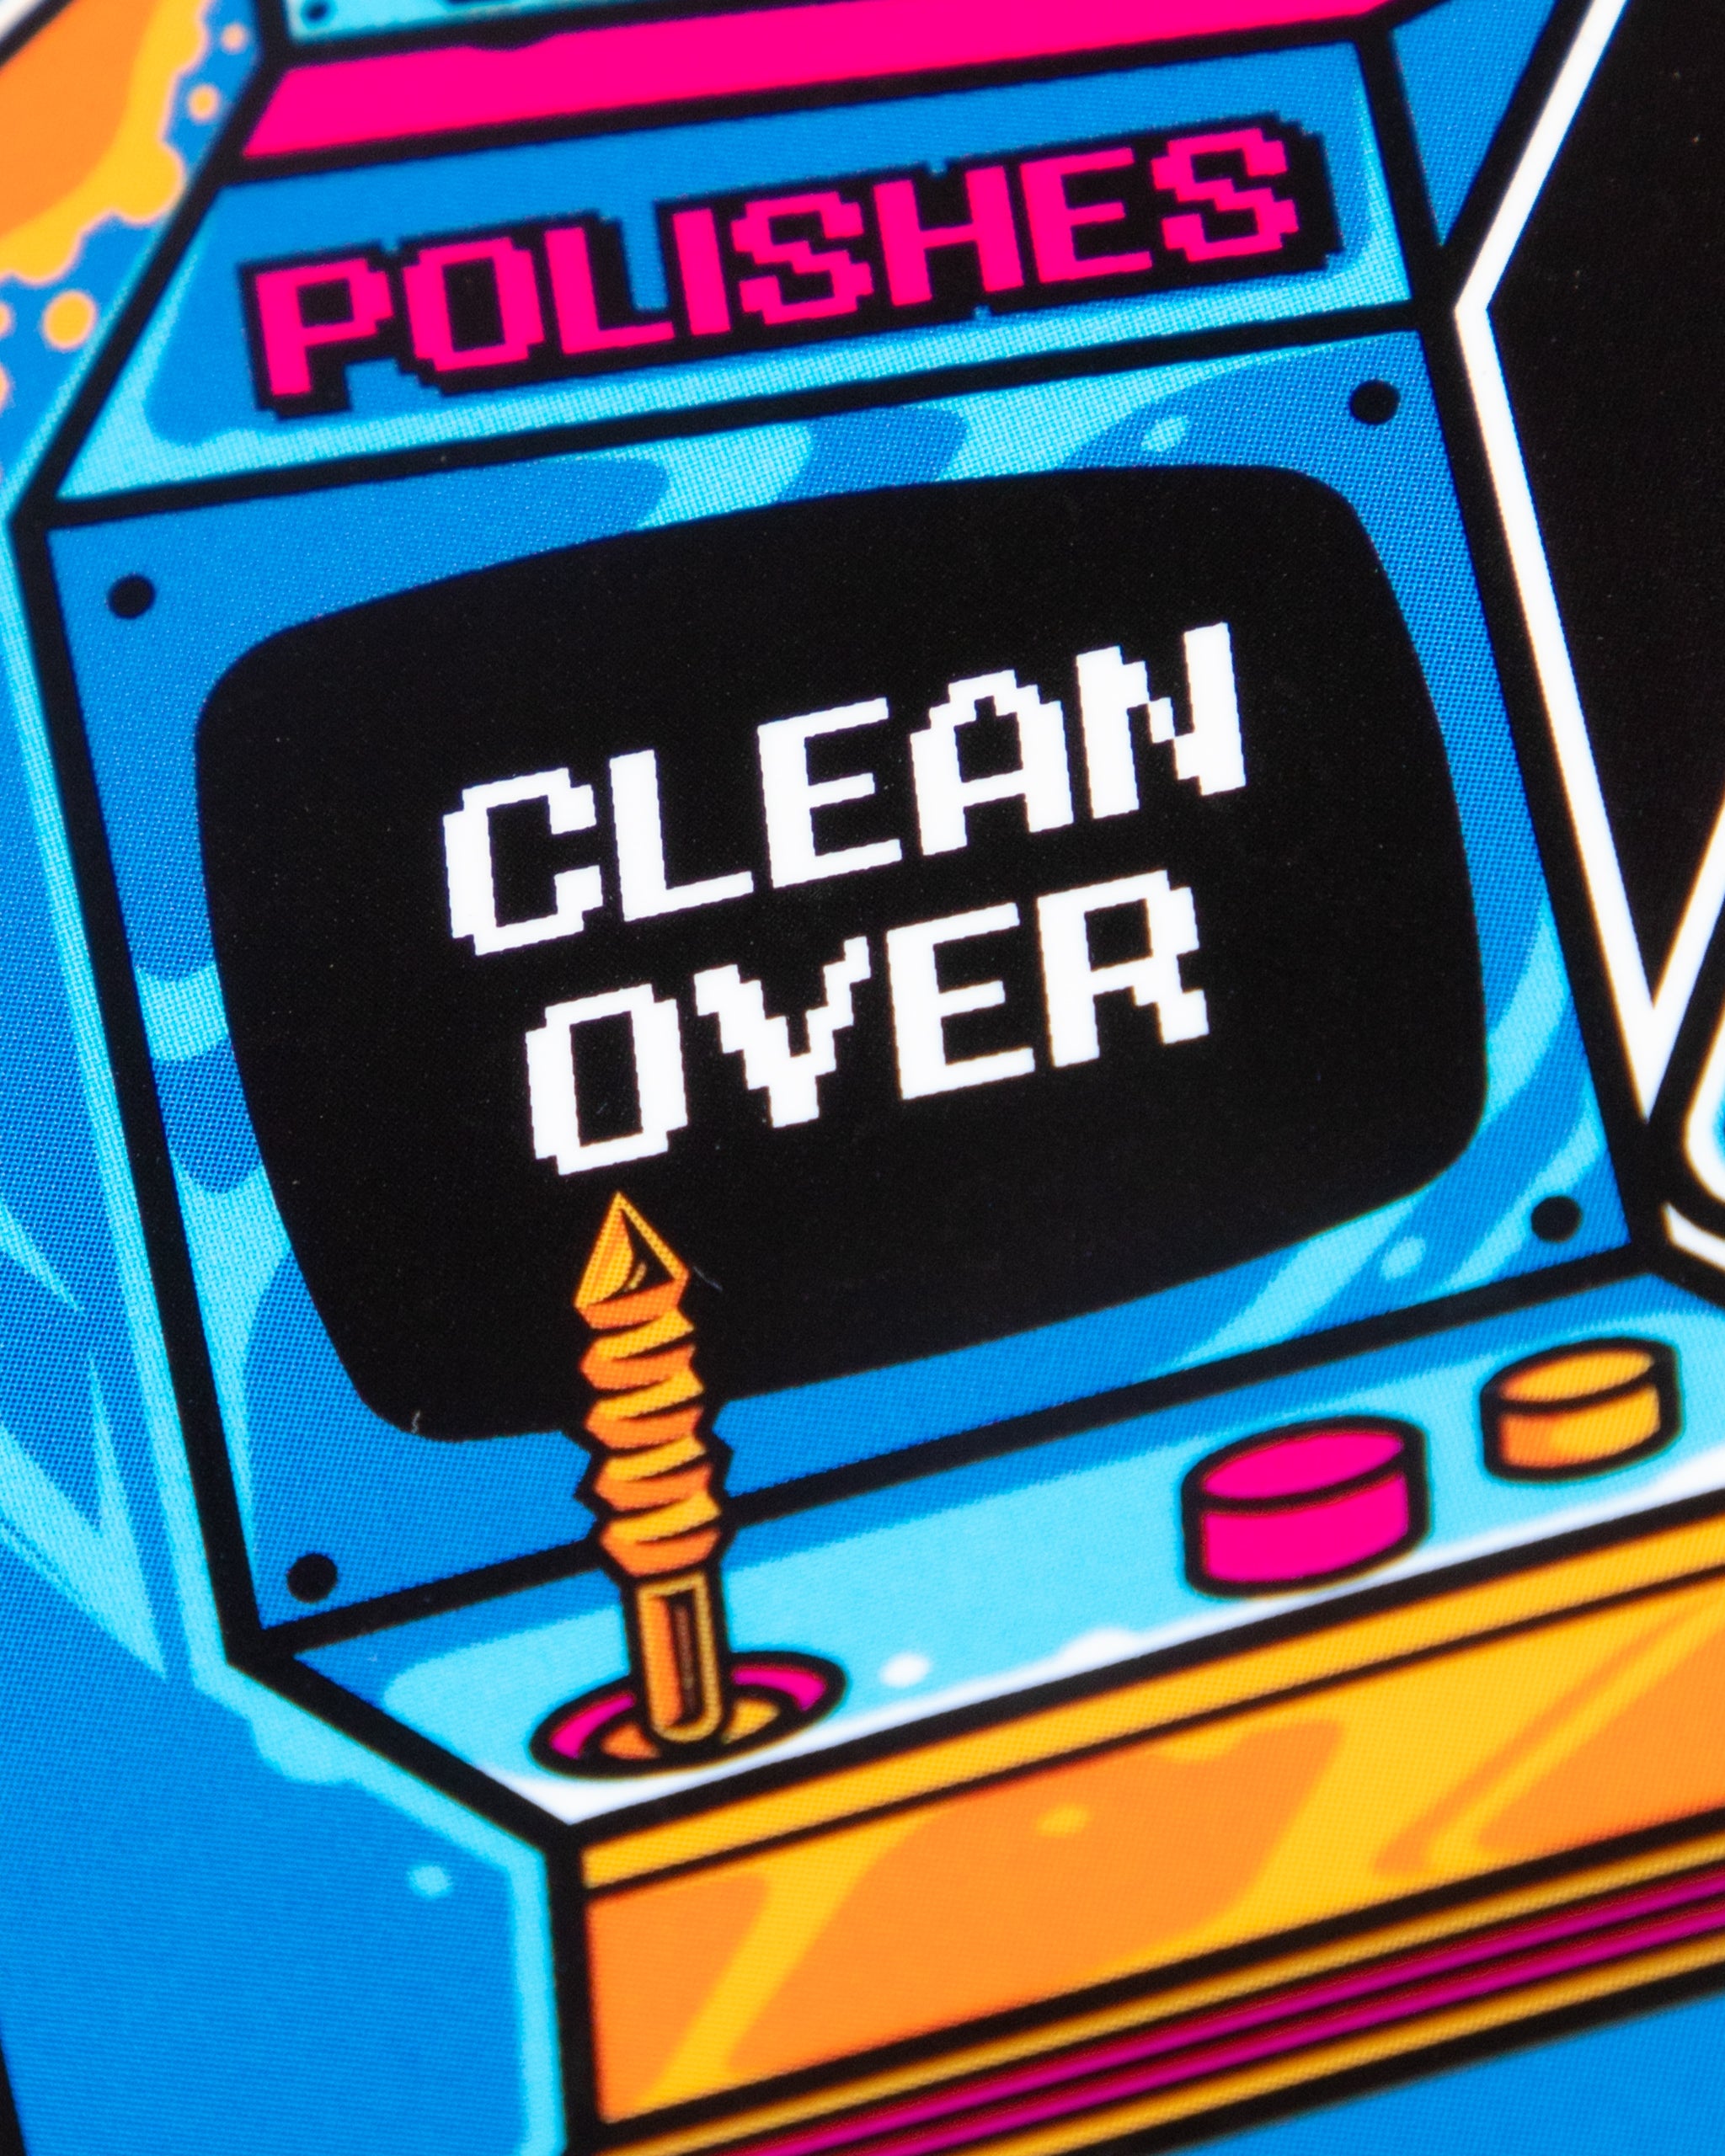 Adam's Clean Over Arcade Sticker